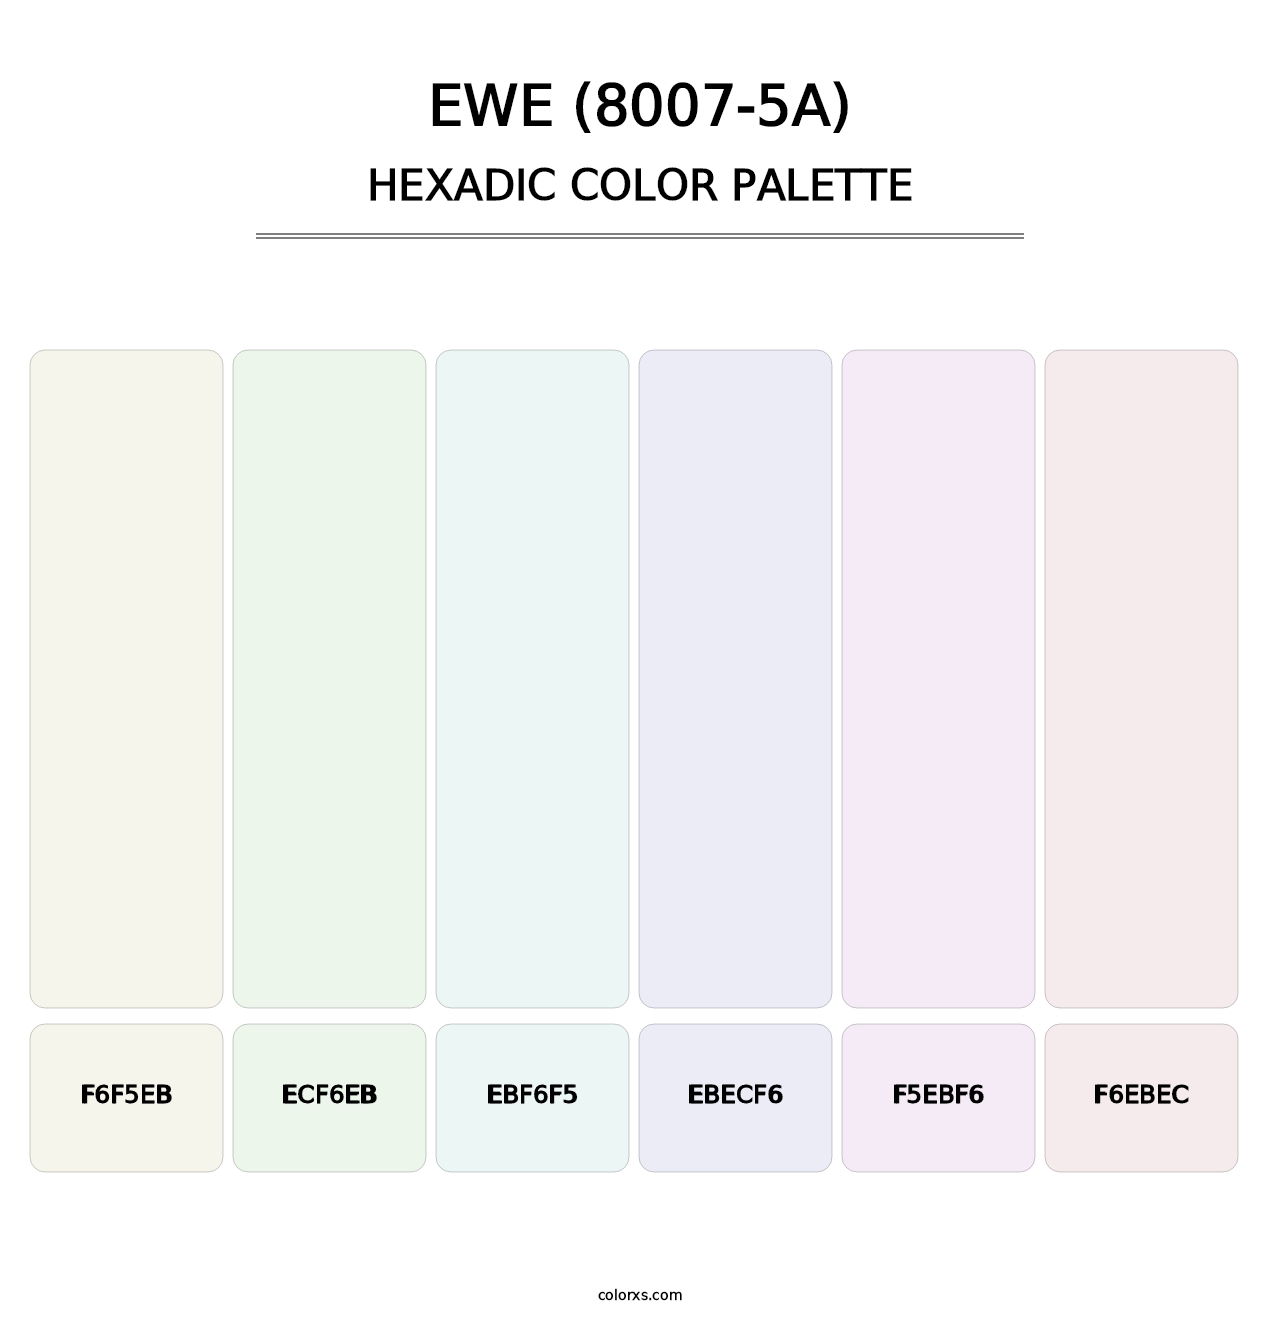 Ewe (8007-5A) - Hexadic Color Palette